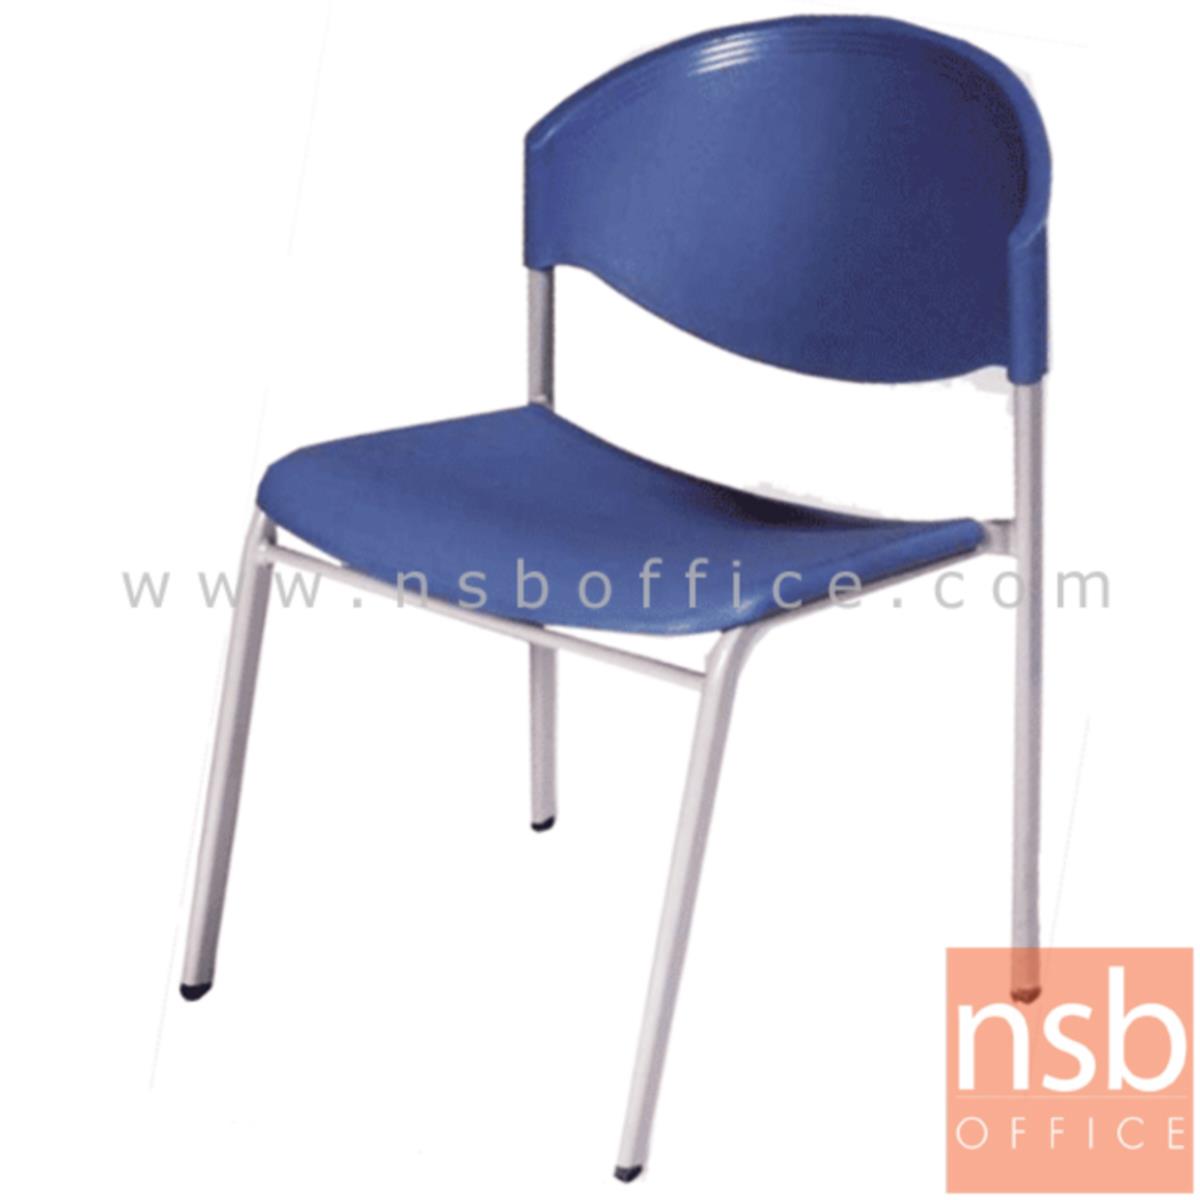 เก้าอี้อเนกประสงค์เฟรมโพลี่ รุ่น A3-970  ขาเหล็ก